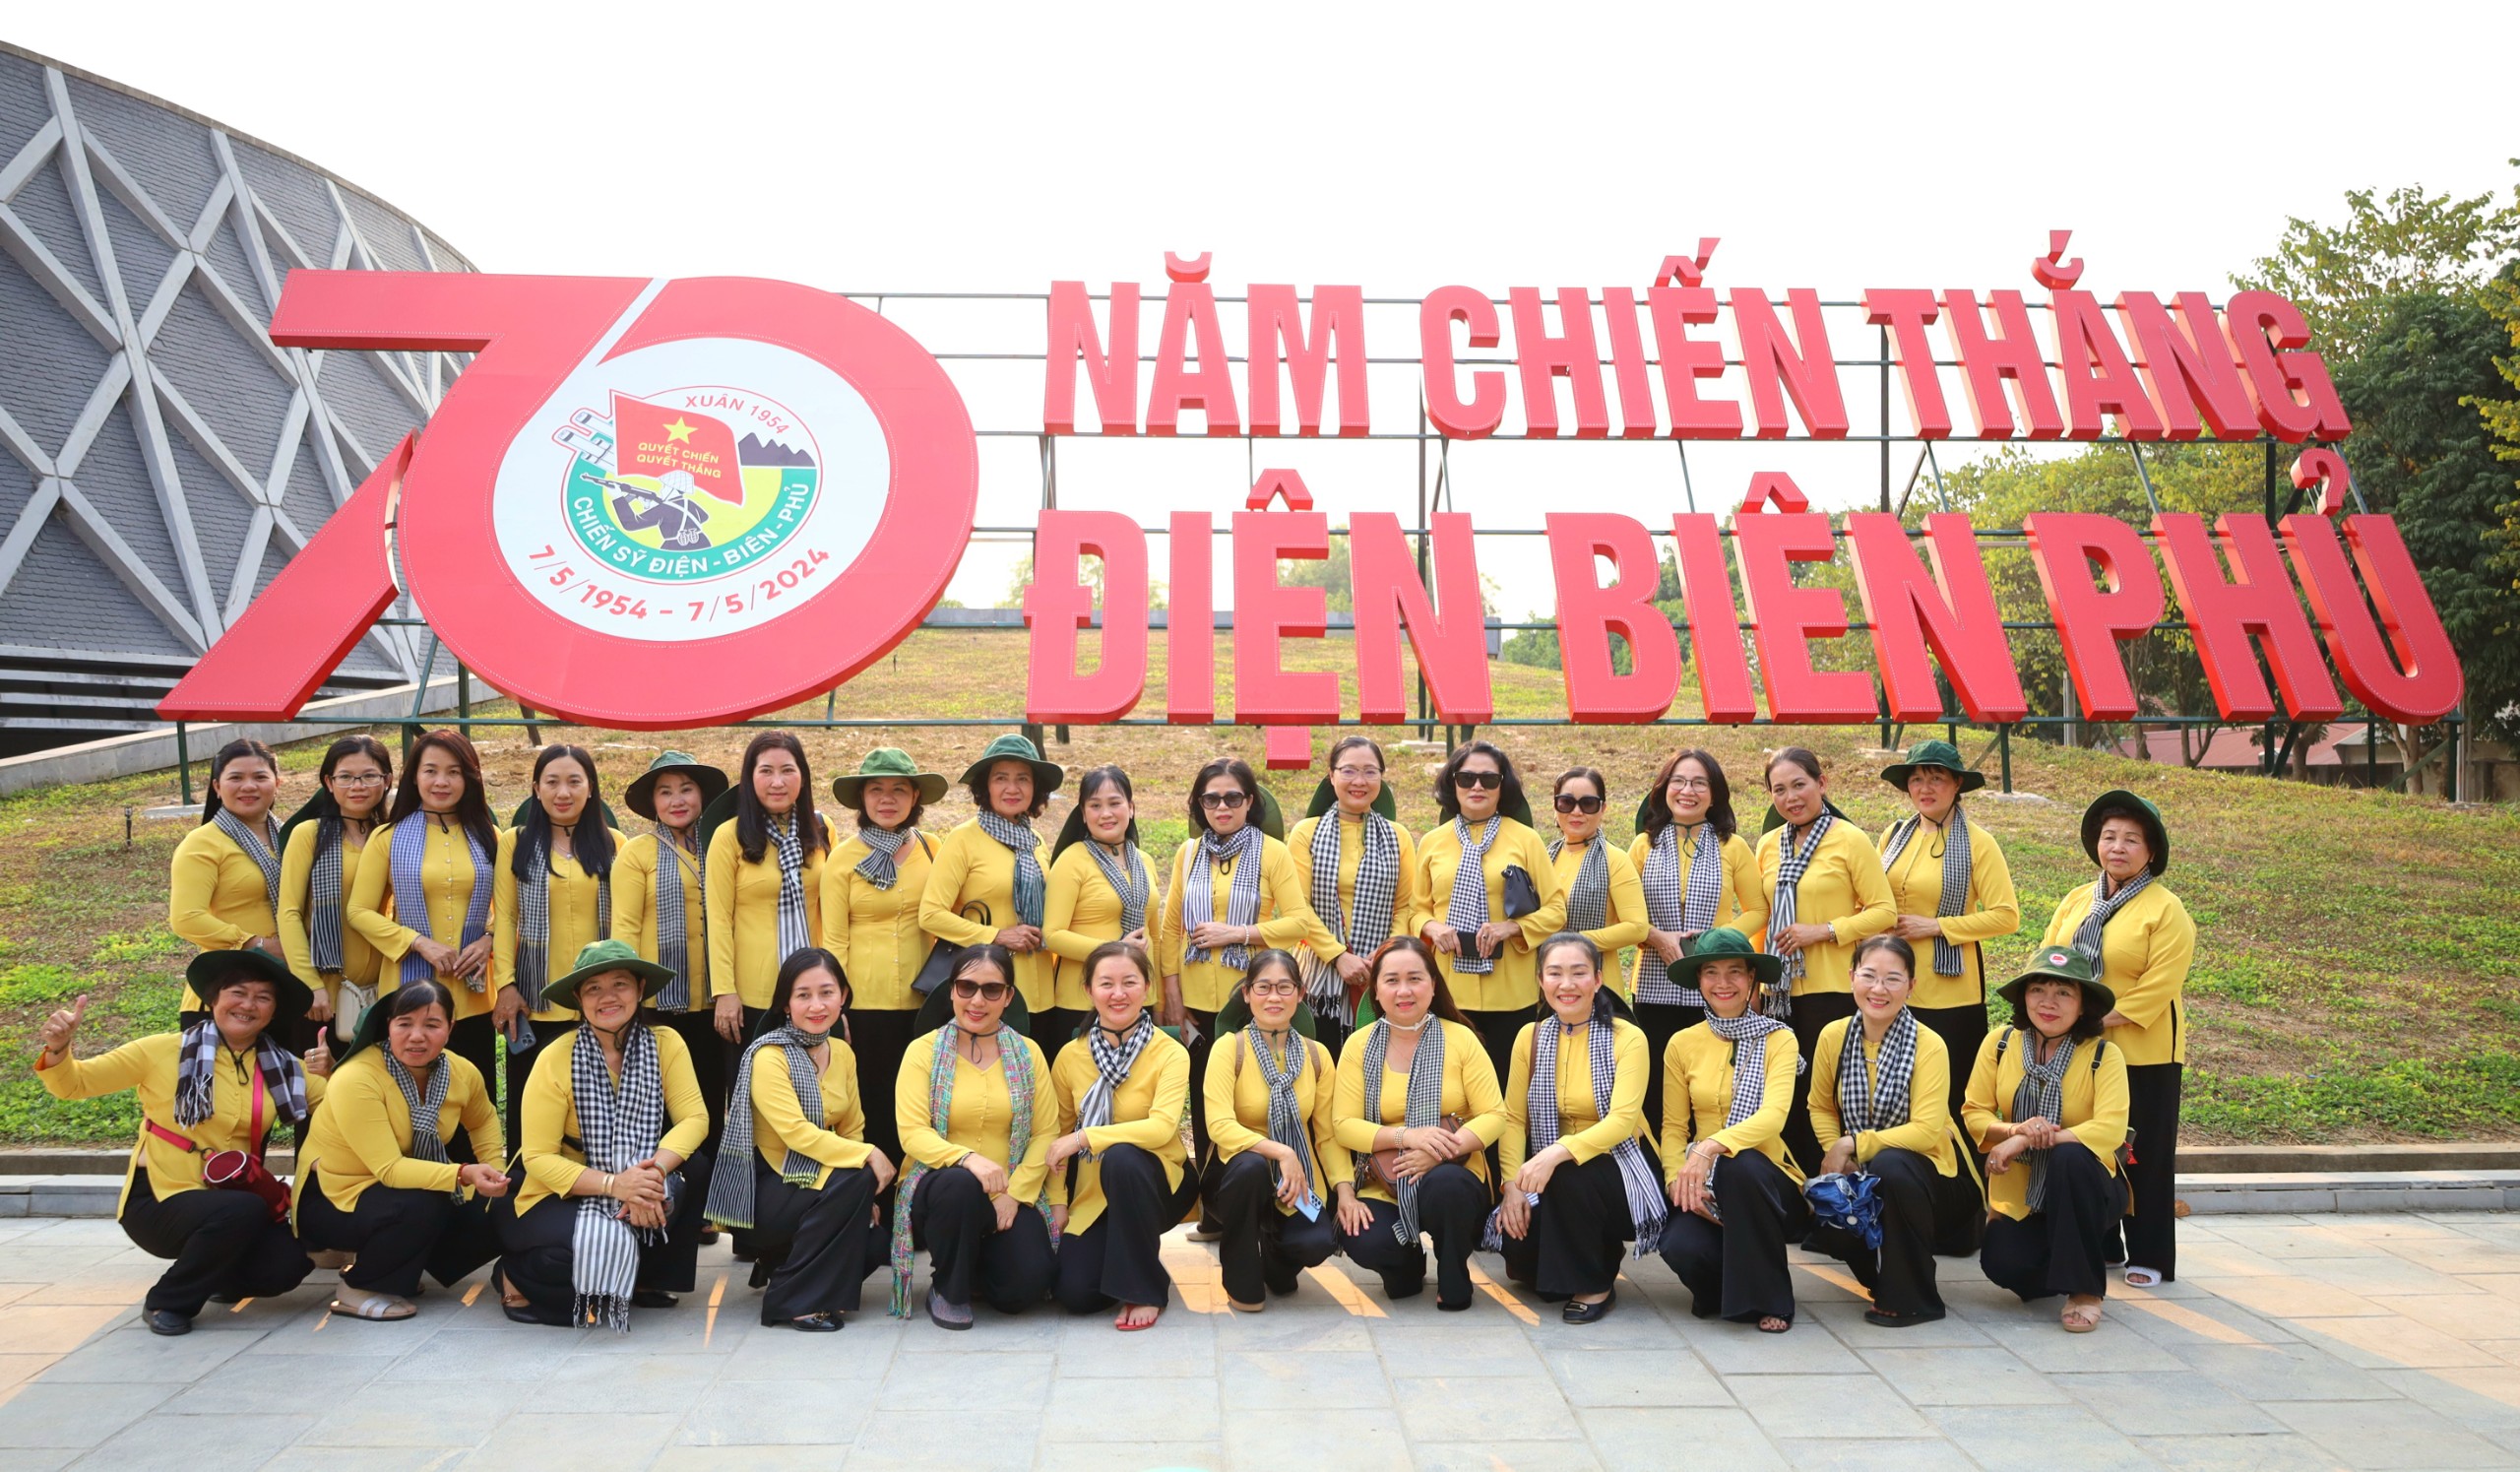 Ban chỉ đạo Bình đẳng giới và Vì sự tiến bộ của phụ nữ tỉnh Vĩnh Long tổ chức Đoàn đại biểu cán bộ nữ về nguồn tại các tỉnh Miền Bắc.